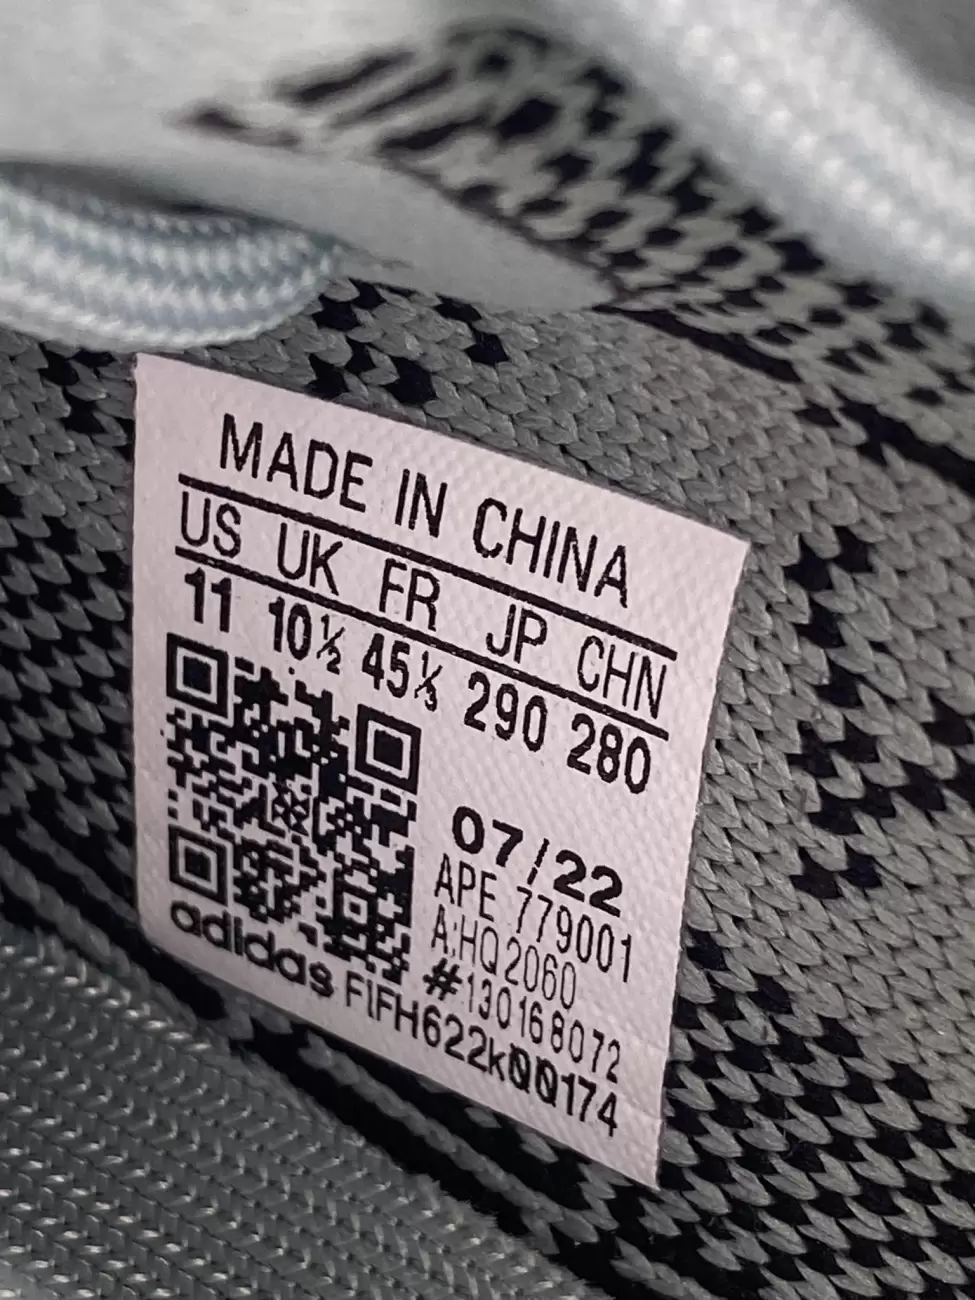 31124 - Adidas Yeezy Boost 350 V2 Salt | Item Details - AfterMarket